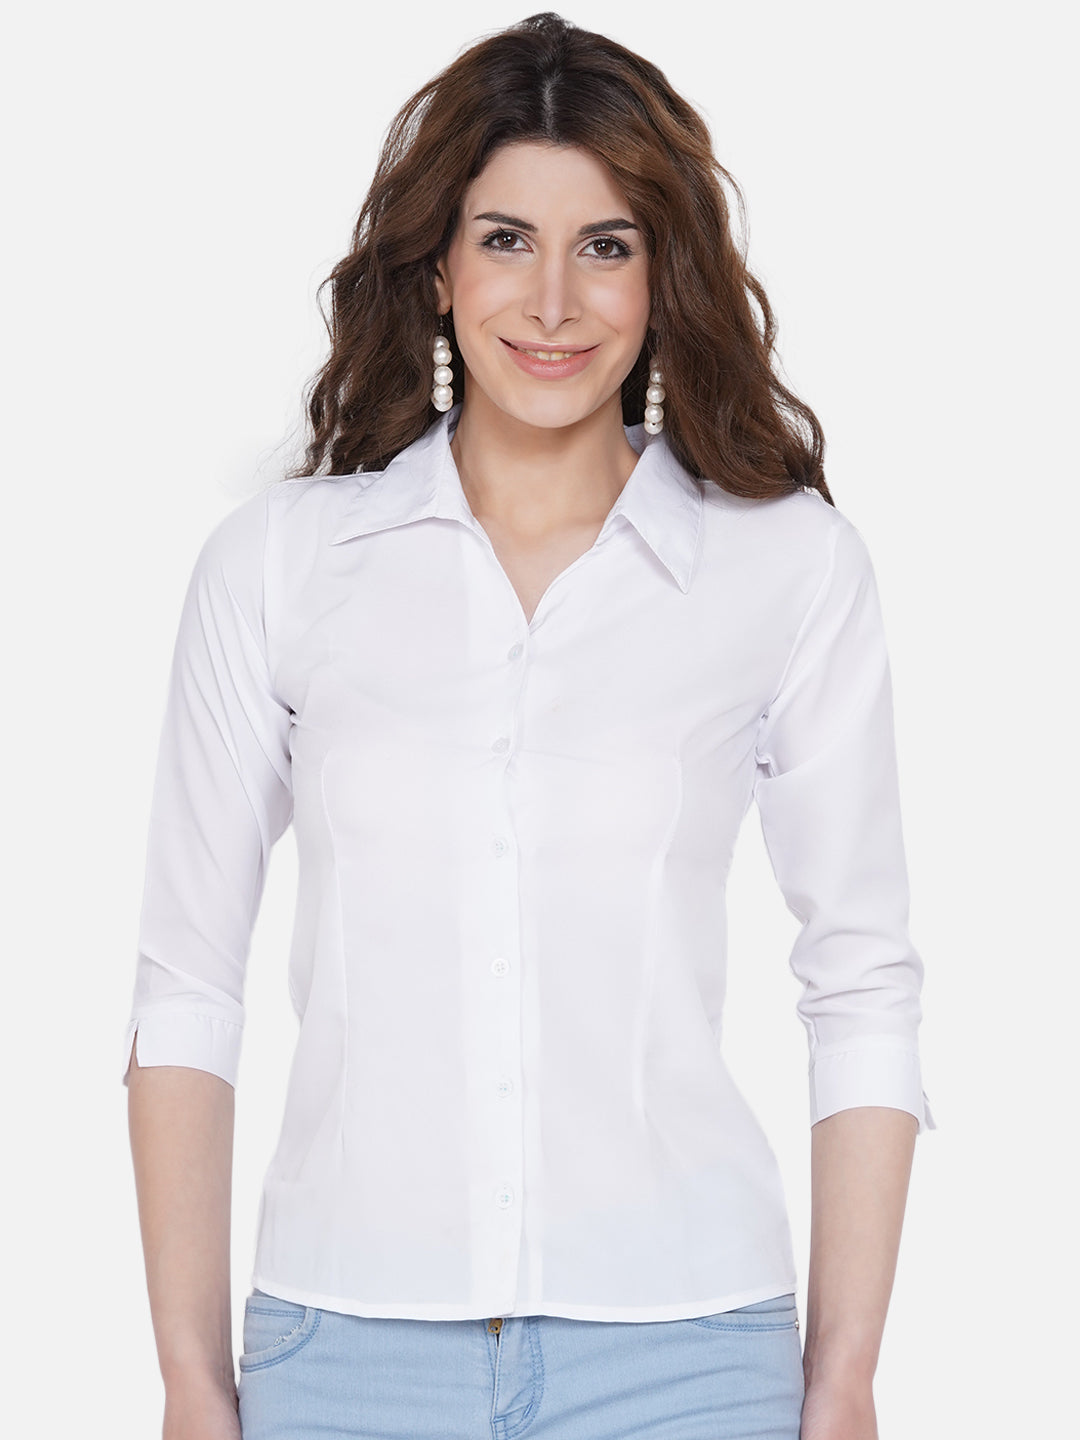 Women's White Casual Shirt - Wahe-Noor